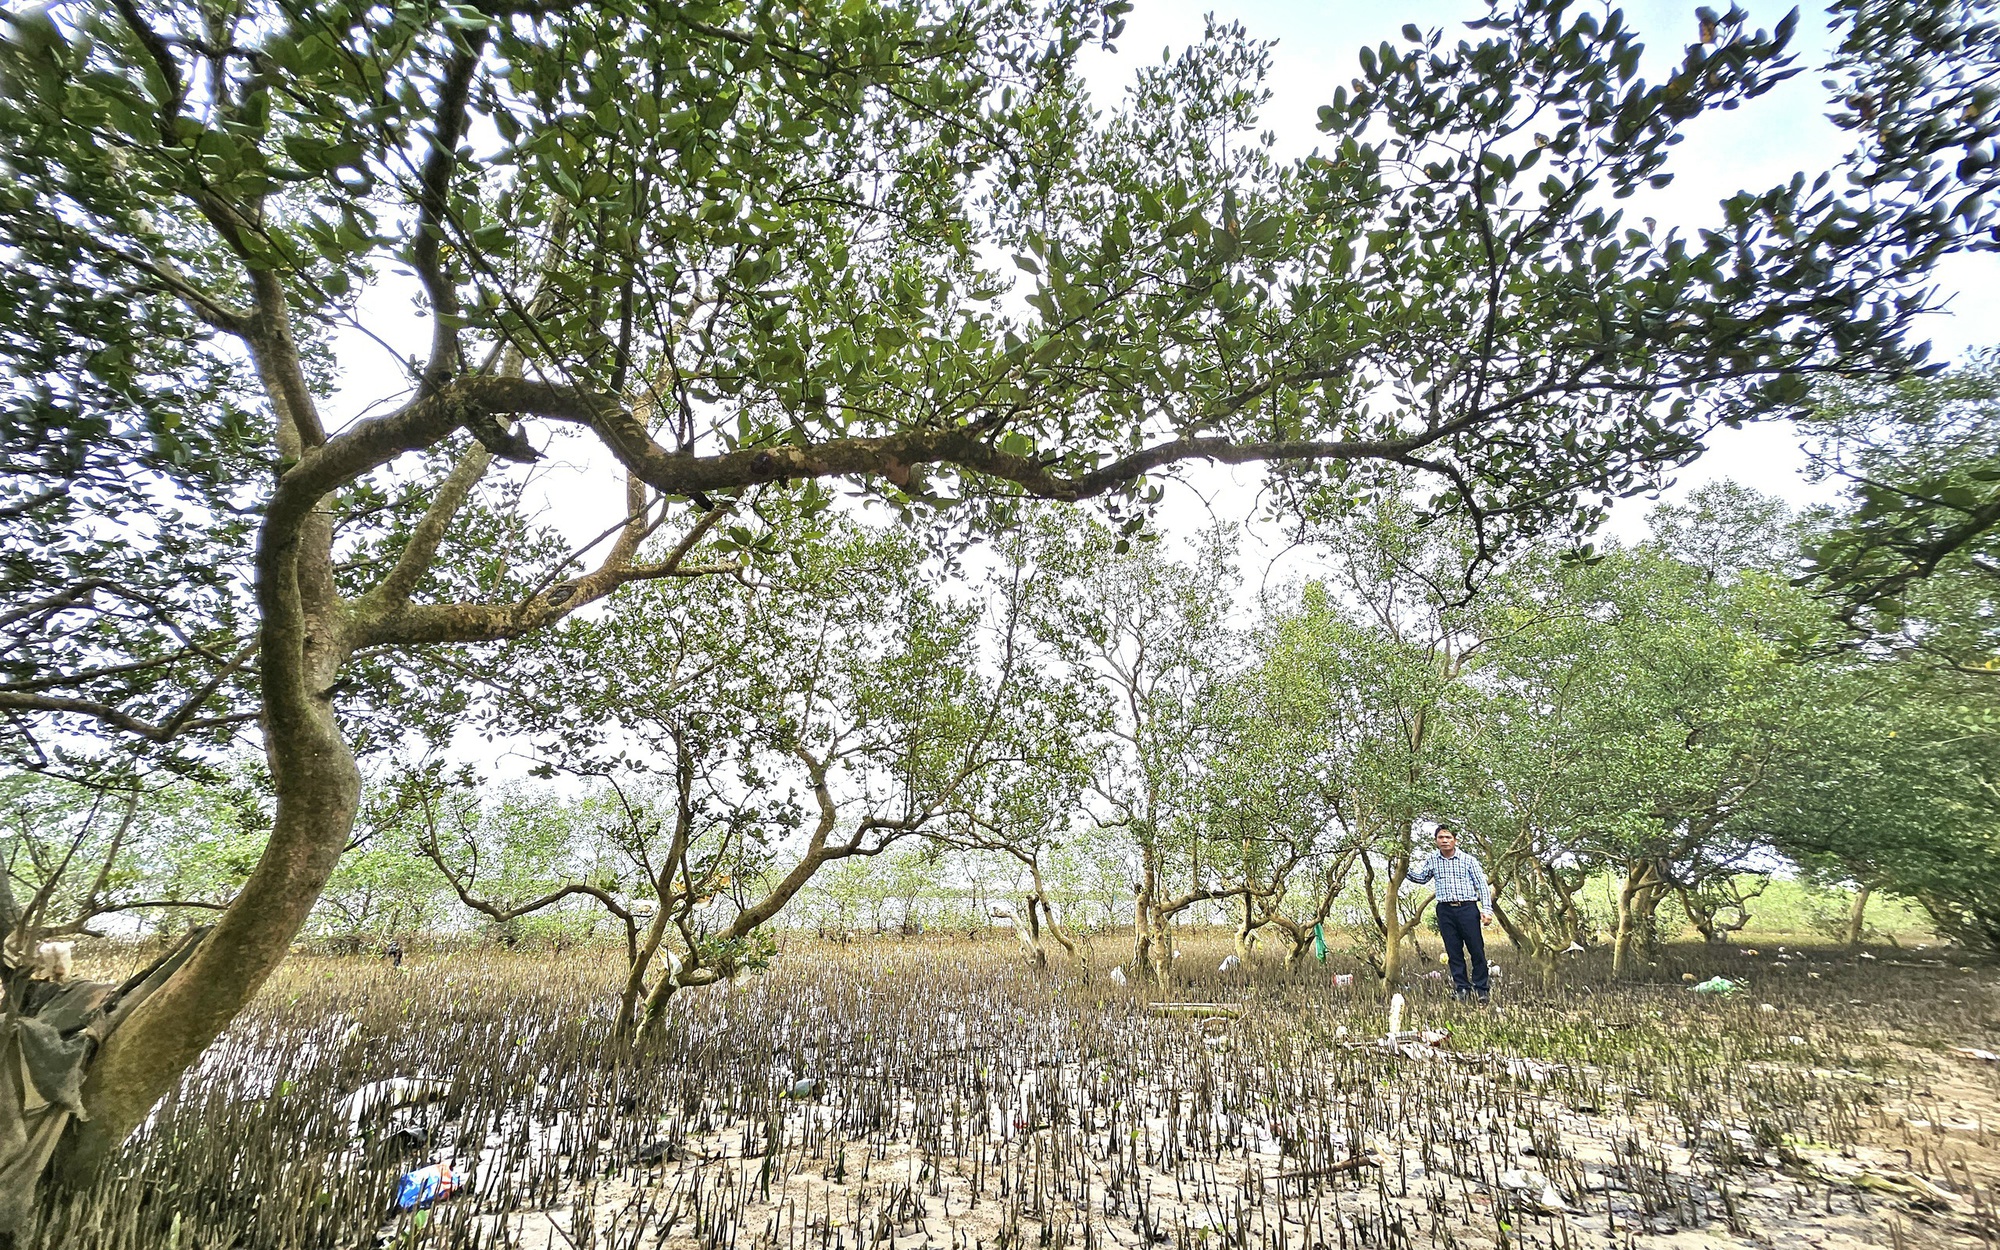 Ở khu rừng ở Quảng Bình, trên cây ra trái lạ, dưới vô số con đặc sản, chim hoang dã bay rợp mặt nước